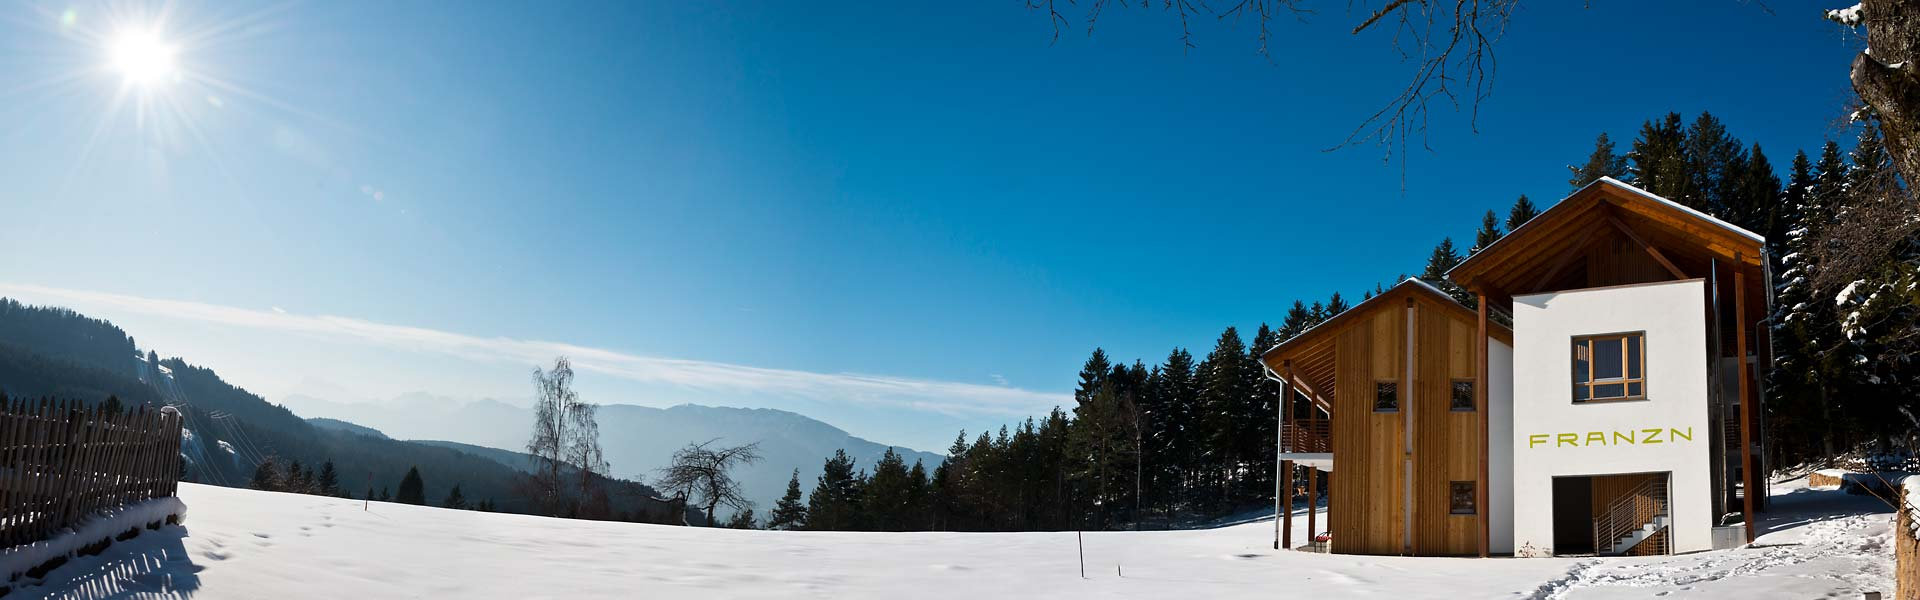 Magnifici panorami invernali nelle Dolomiti